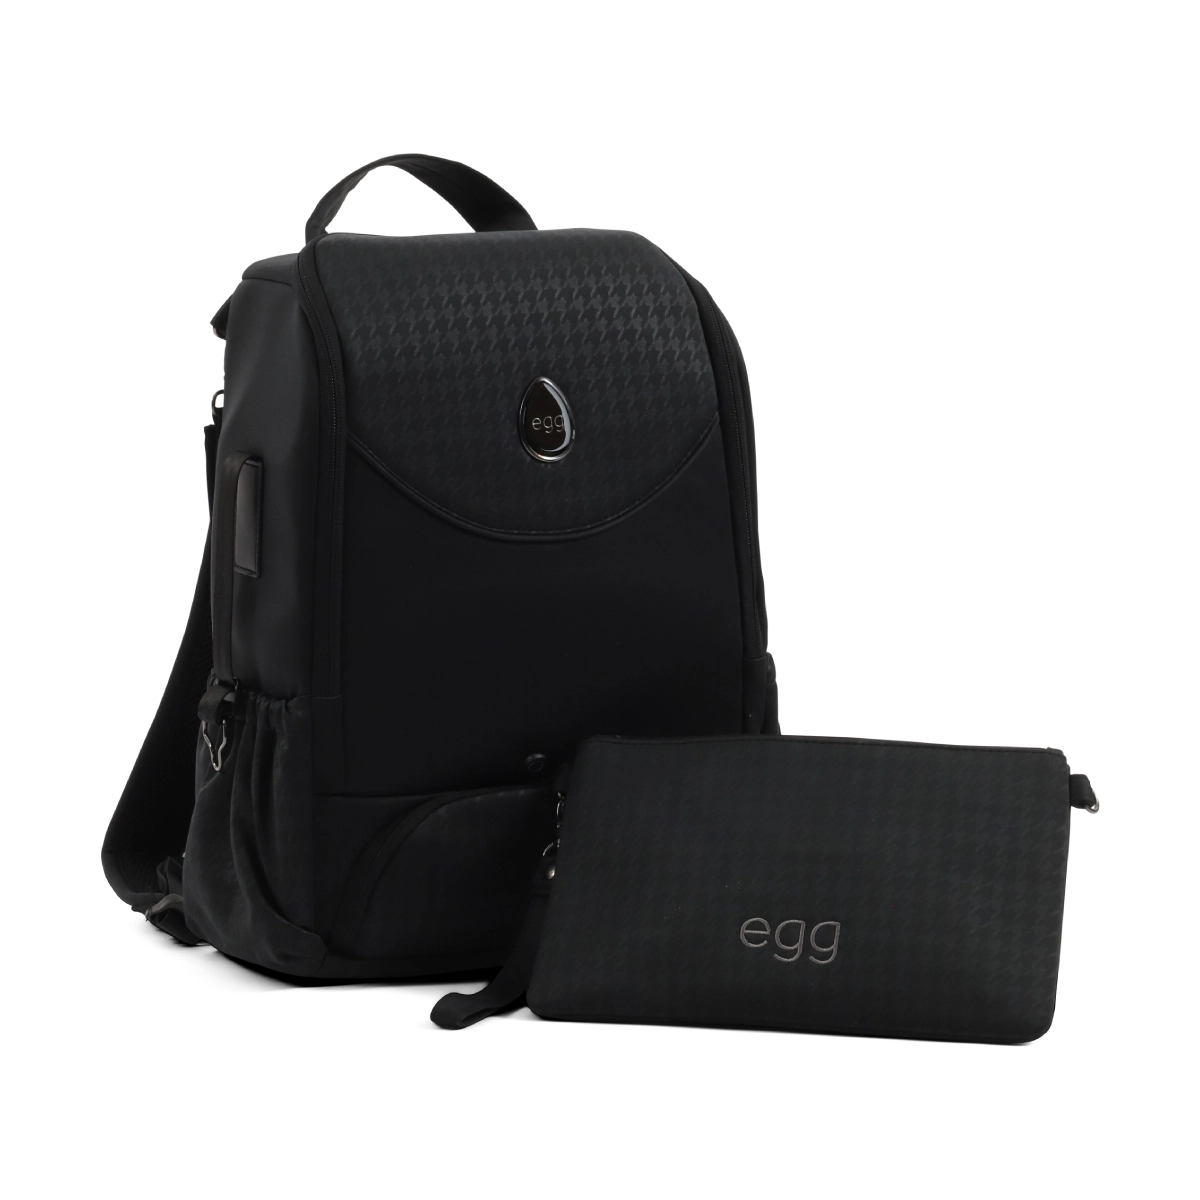 egg® 3 Backpack (Top Loader)